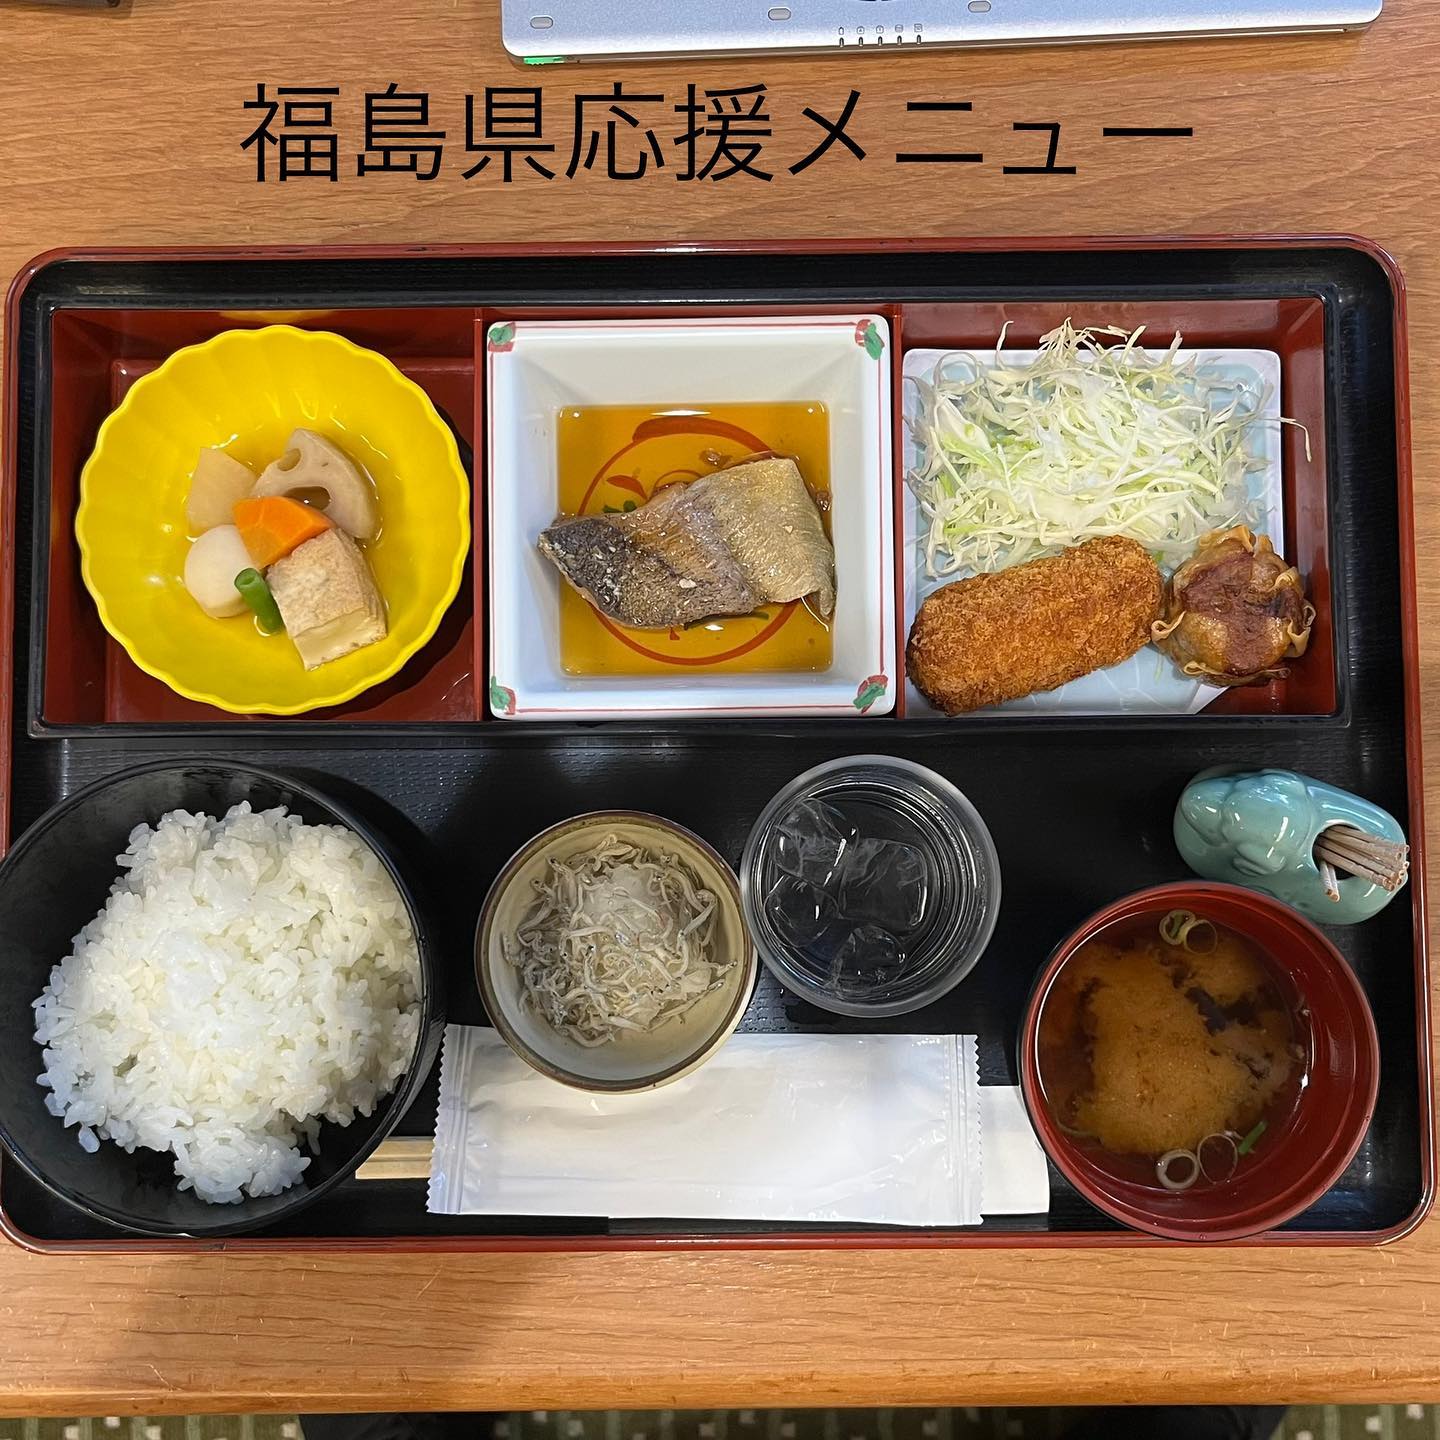 昼食は県議会食堂の福島県応援メニューにしました。福島県の処理水放出に伴い風評被害が懸念され、応援のために特別メニューとして提供されています。
この中に応援の食材があります。どれでしょう?正解は小鉢のかちりジャコおろしです。もちろん美味しかったですよ。
福島県産水産物の消費拡大のため応援してまいります。